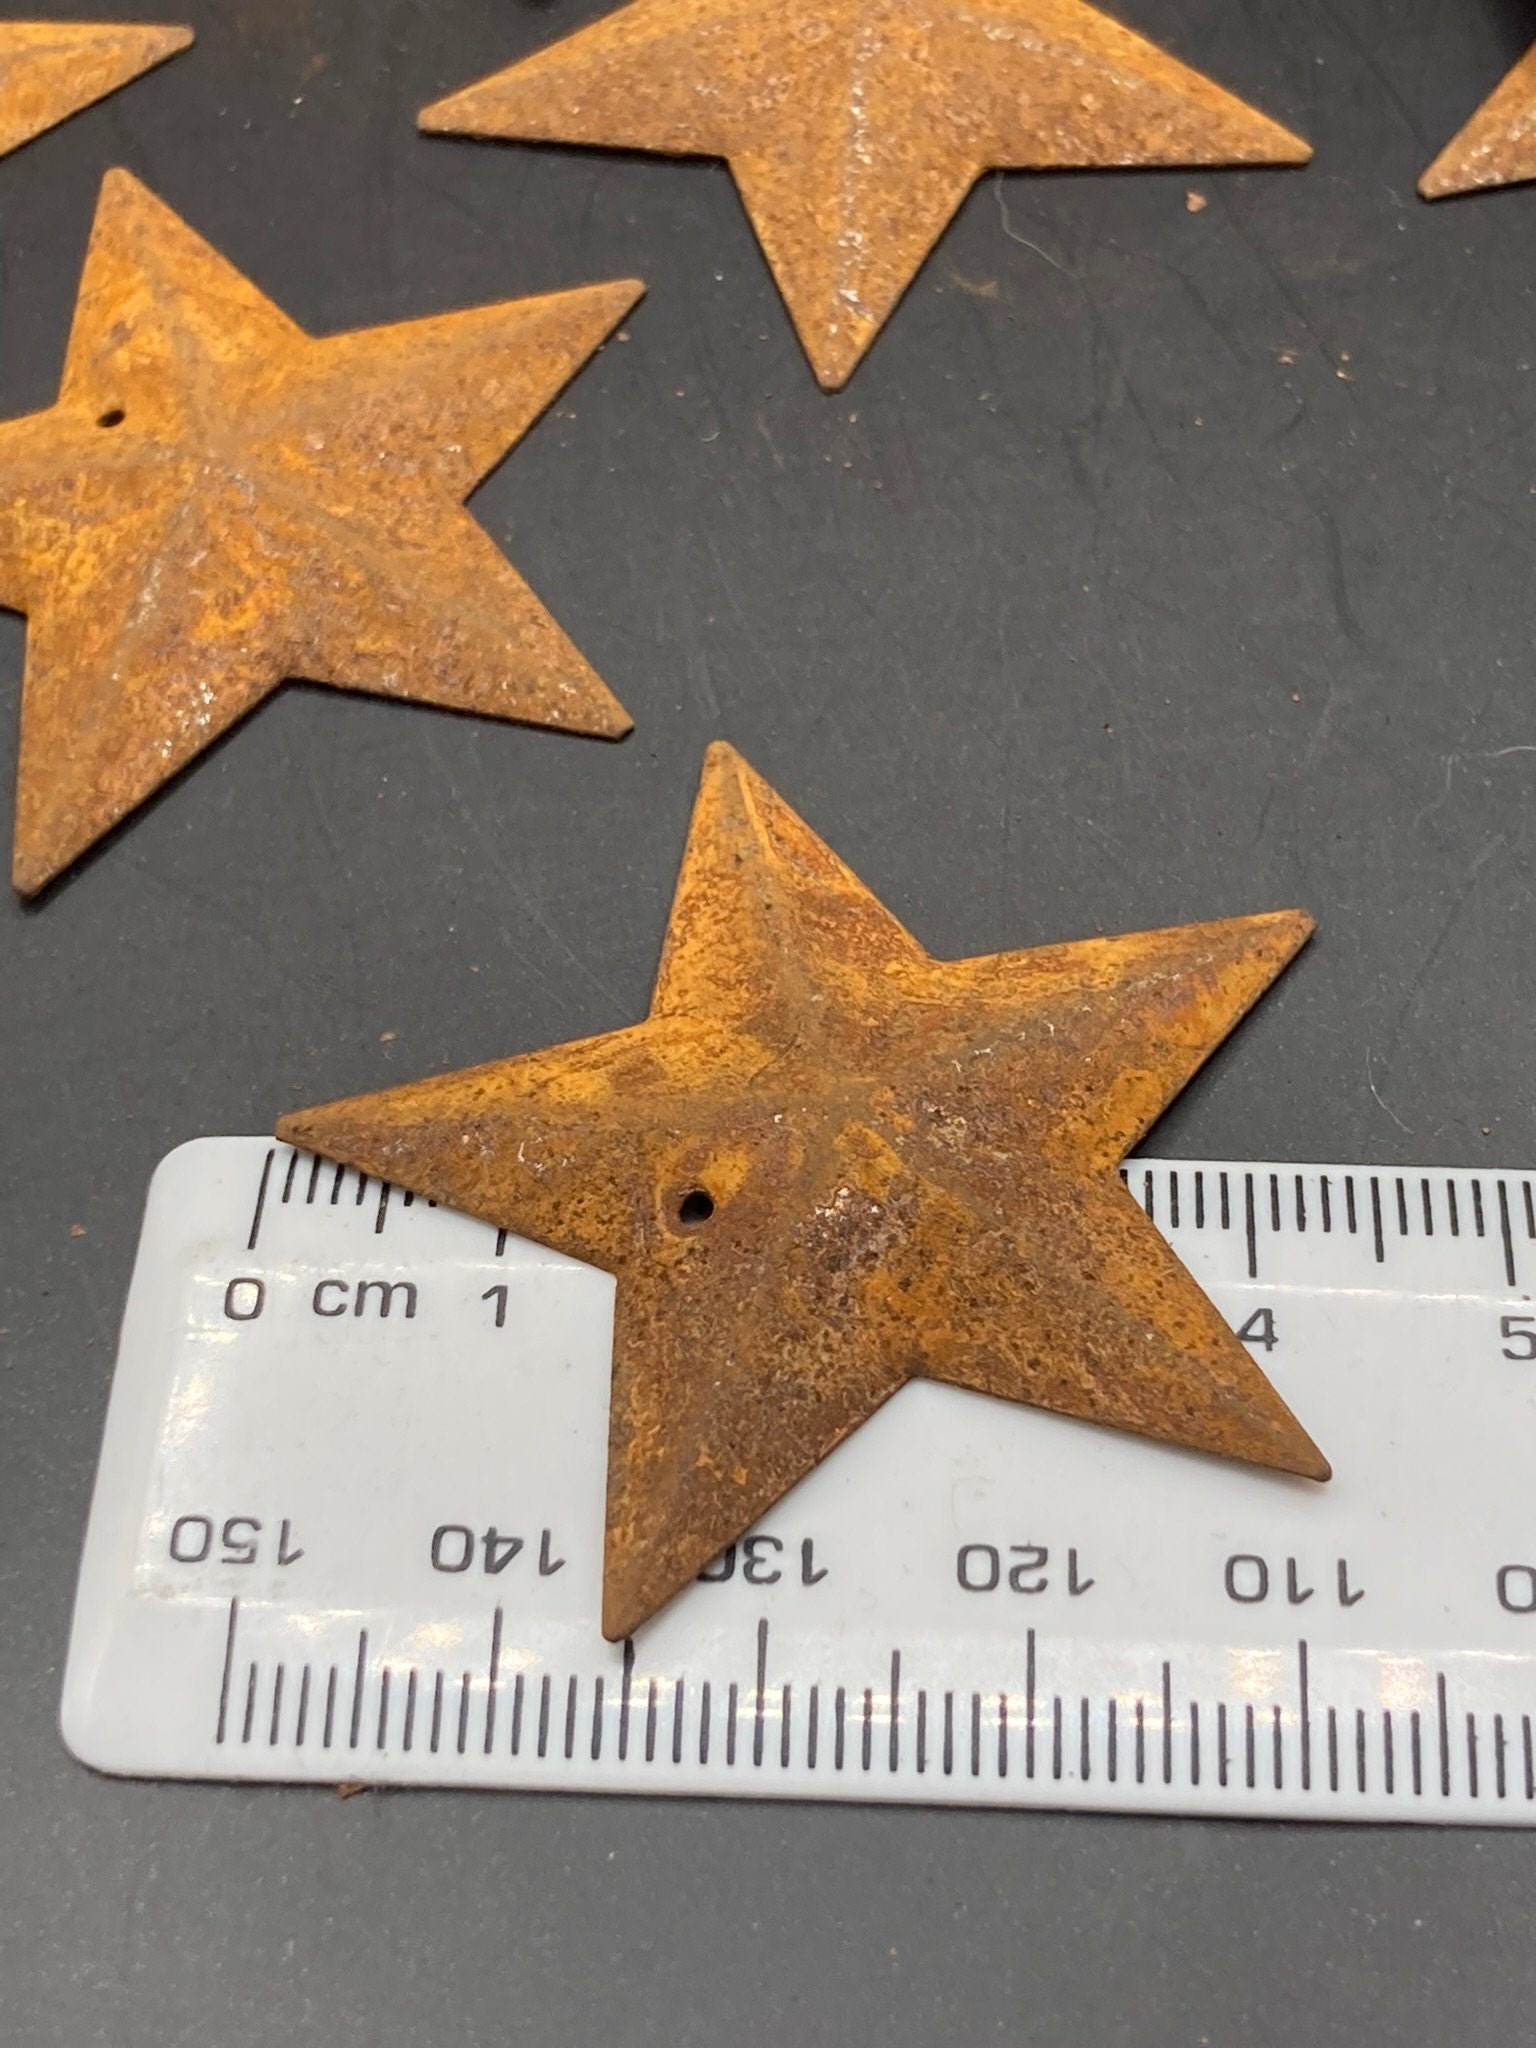 Set of 10 x 4.5cm rusty metal rustic embossed pressed metal STARS craft